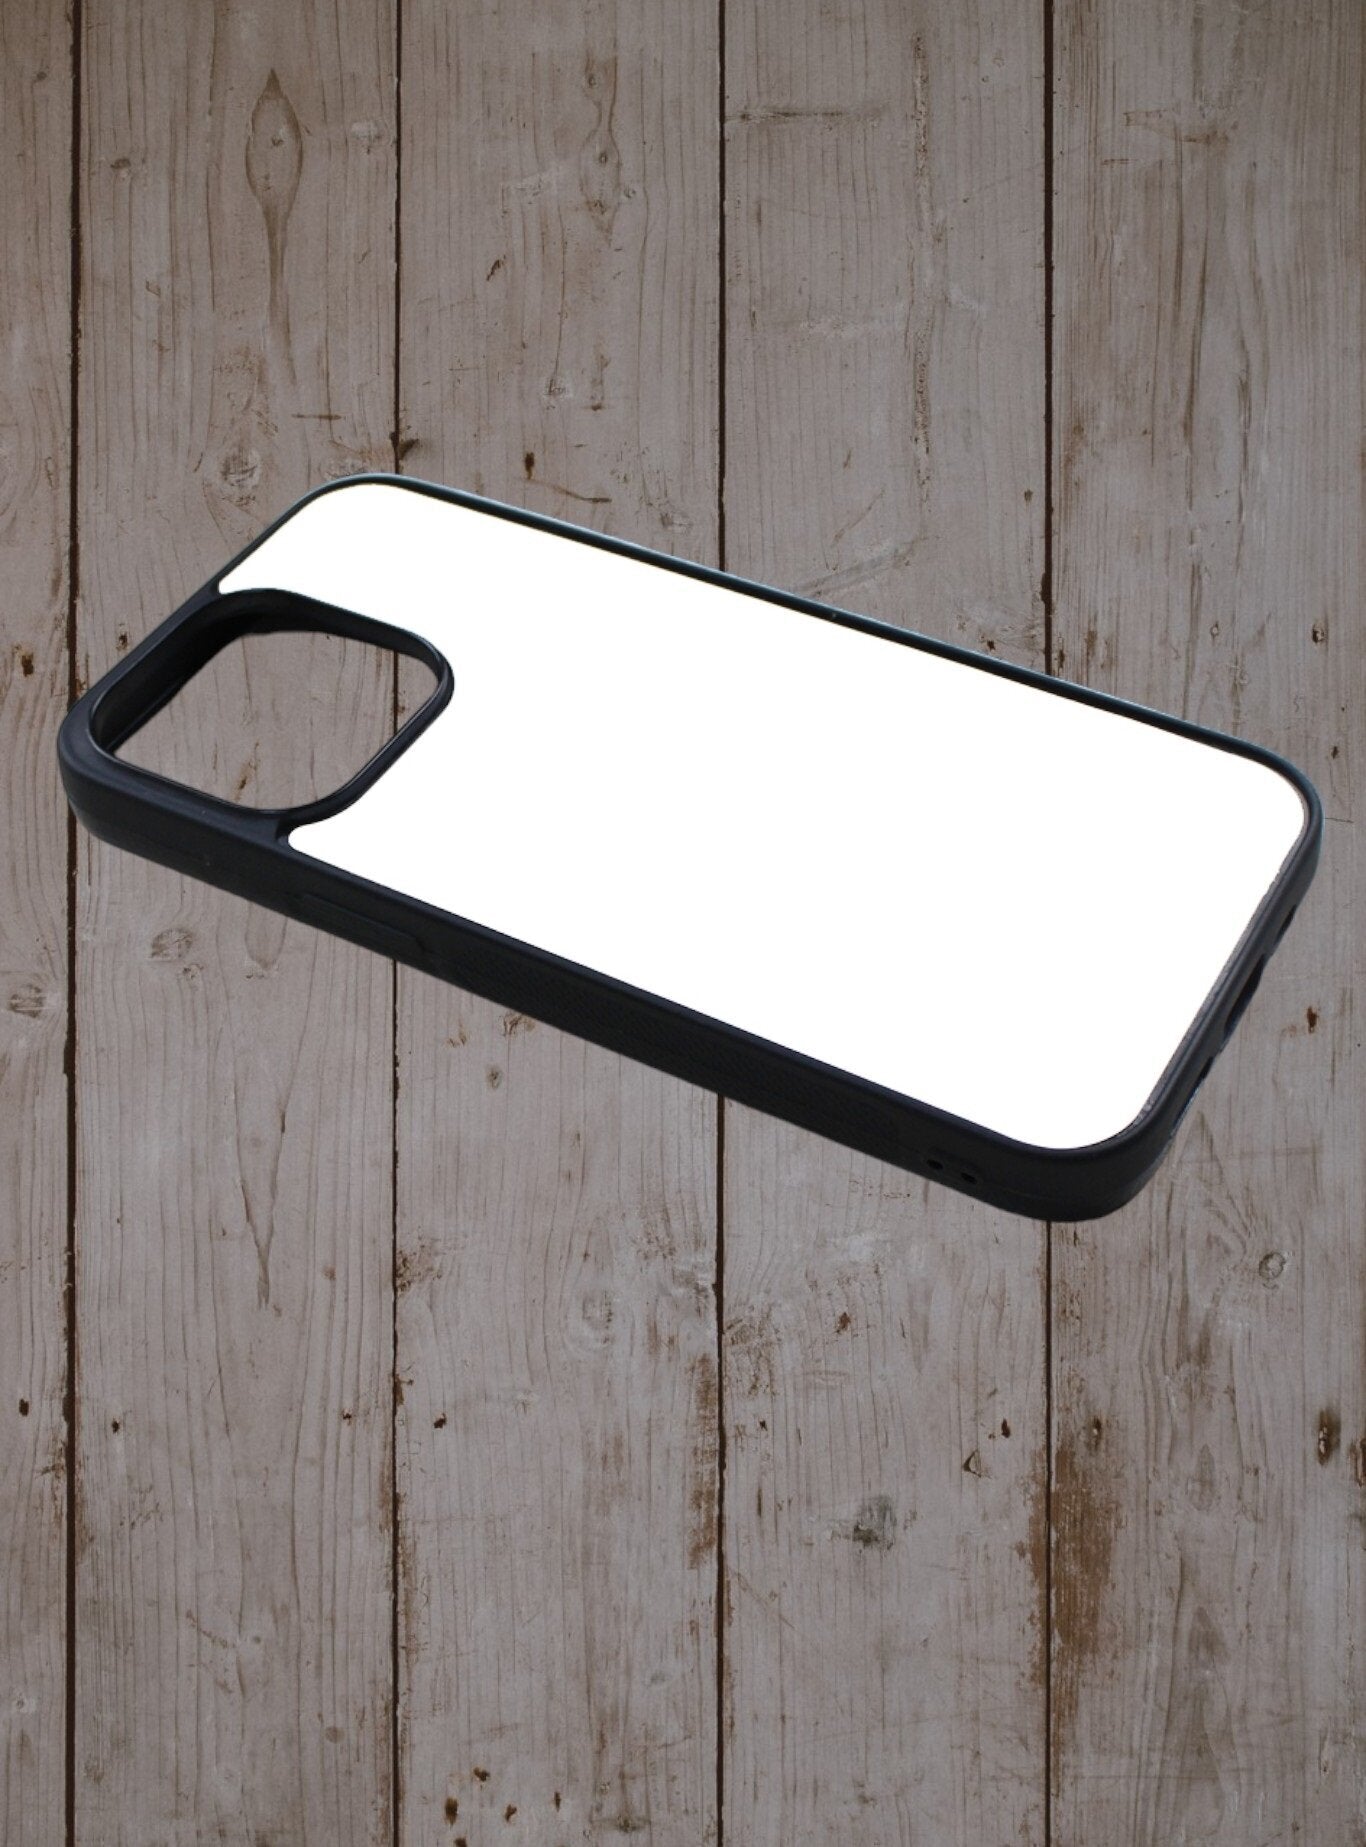 Iphone case - Turret